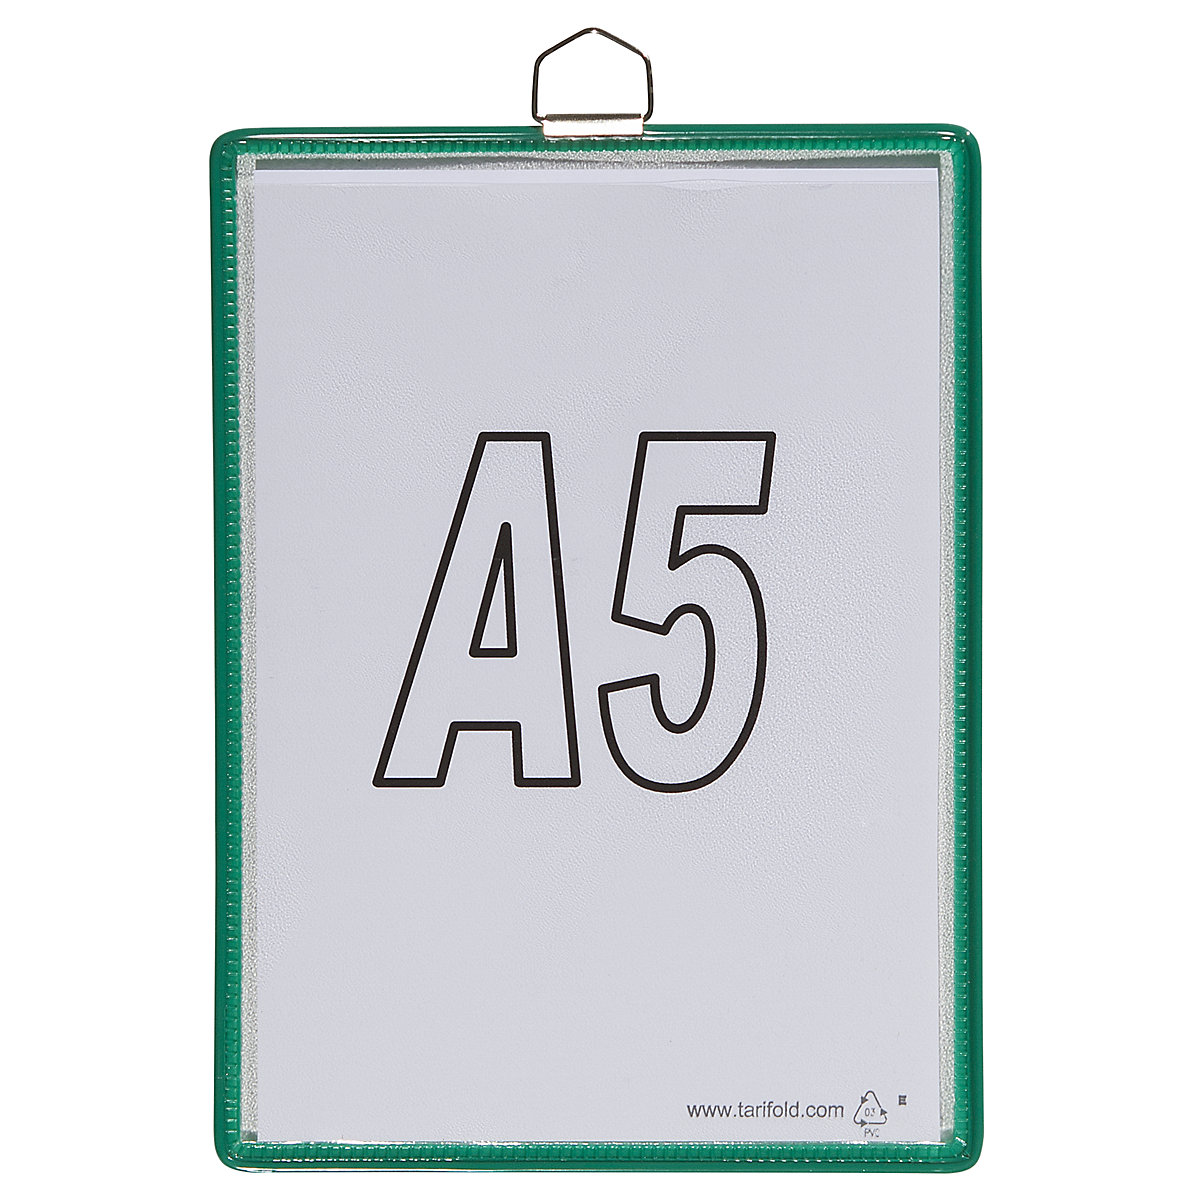 Závěsná průhledná kapsa – Tarifold, pro formát DIN A5, zelená, bal.j. 10 ks-5